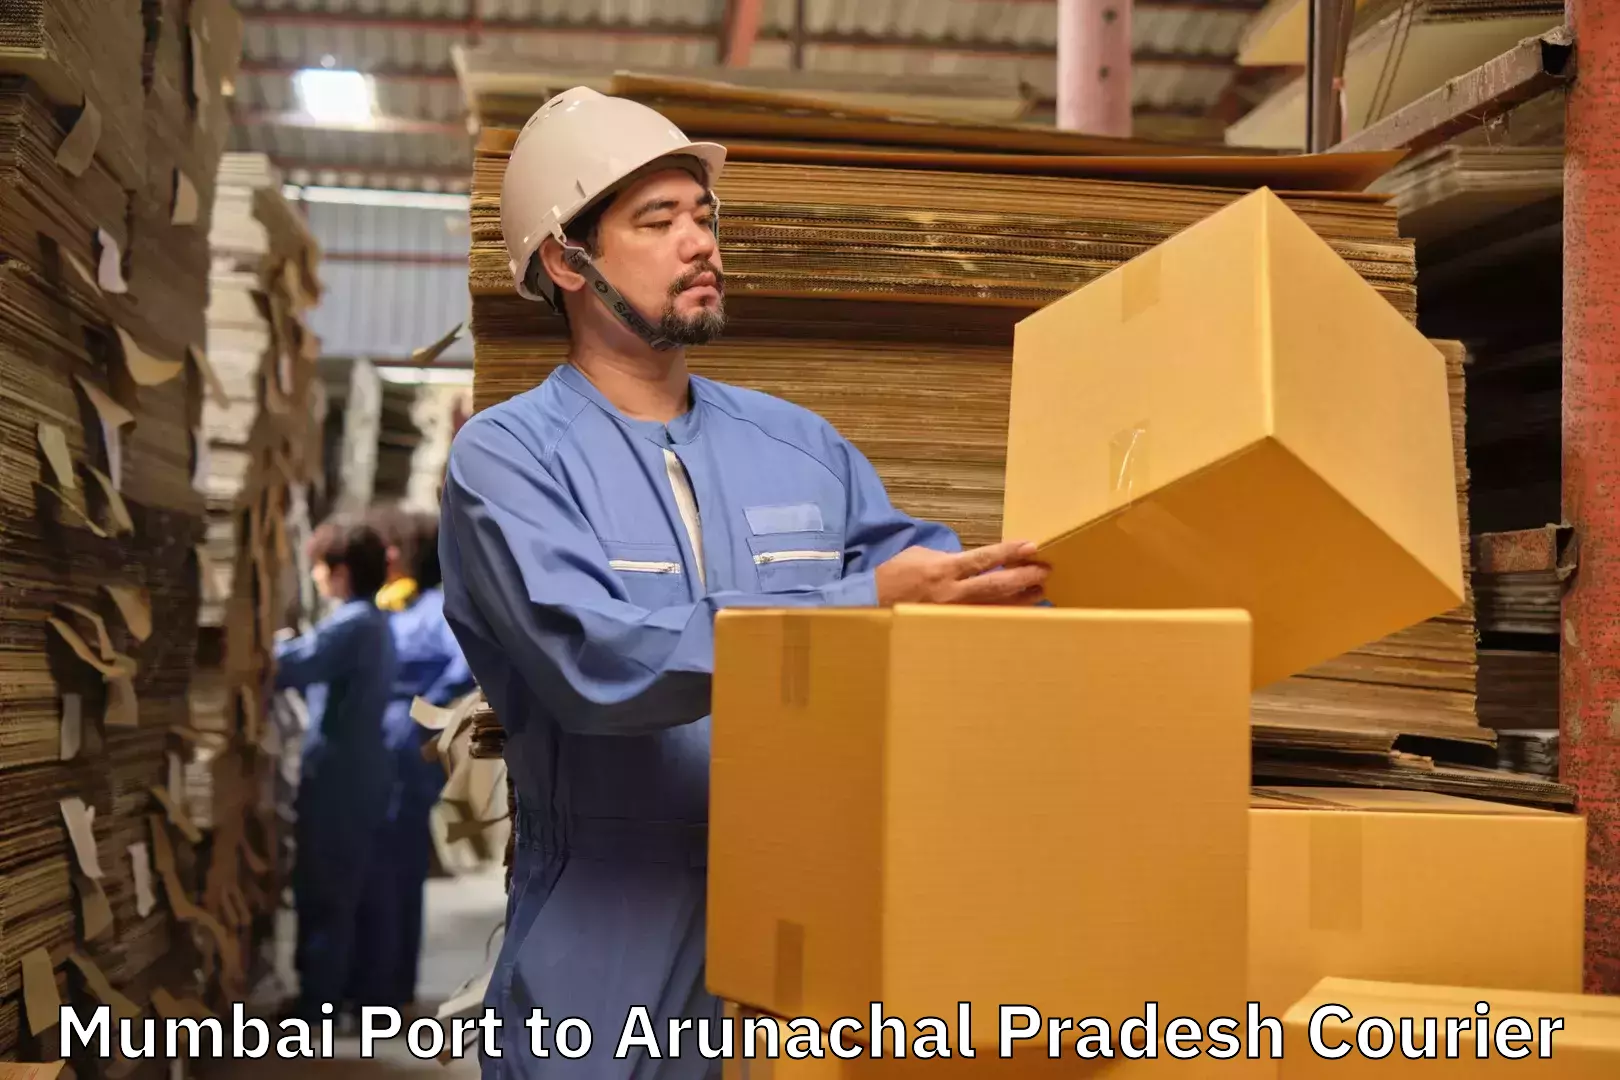 Customized luggage delivery Mumbai Port to Arunachal Pradesh